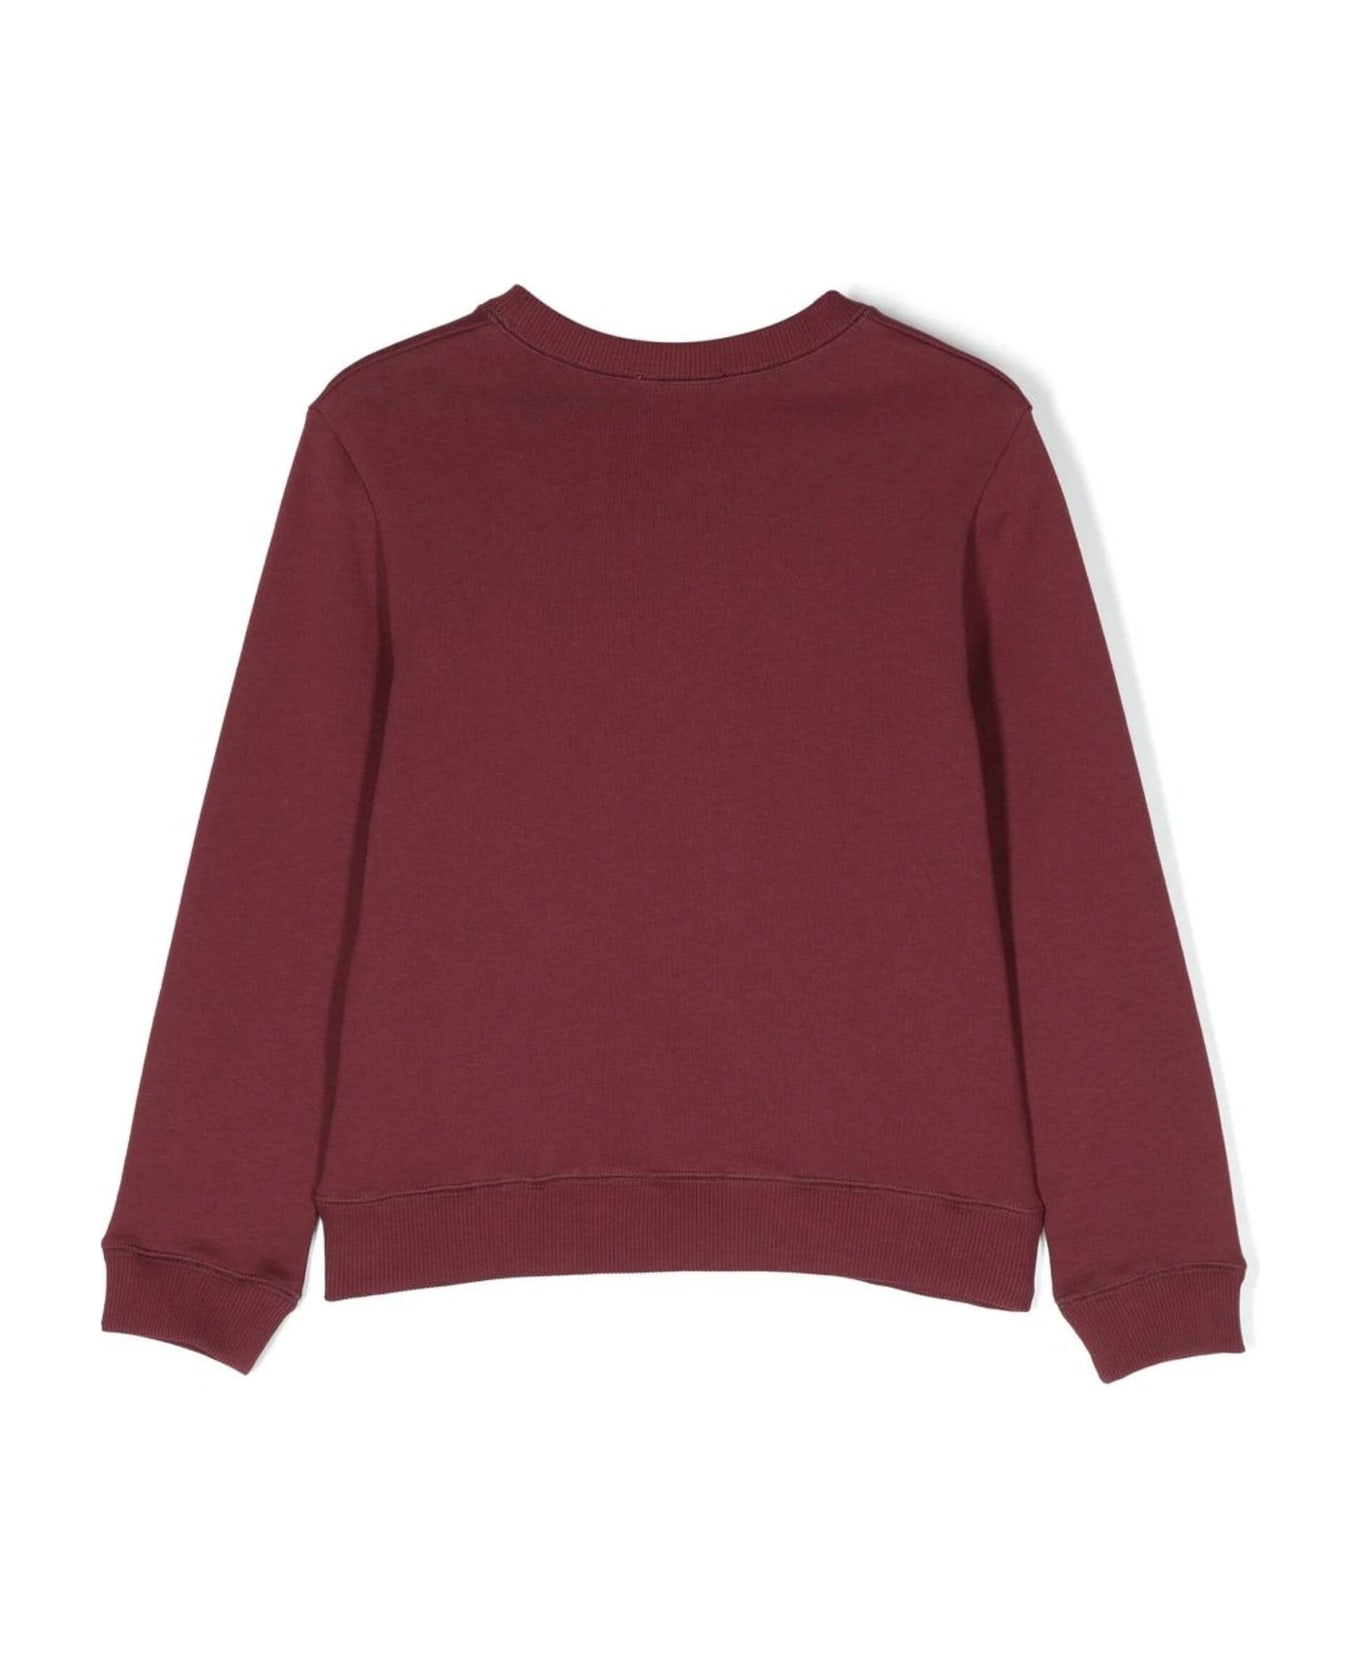 Lanvin Bordeaux Red Cotton Sweatshirt - A Bordeaux